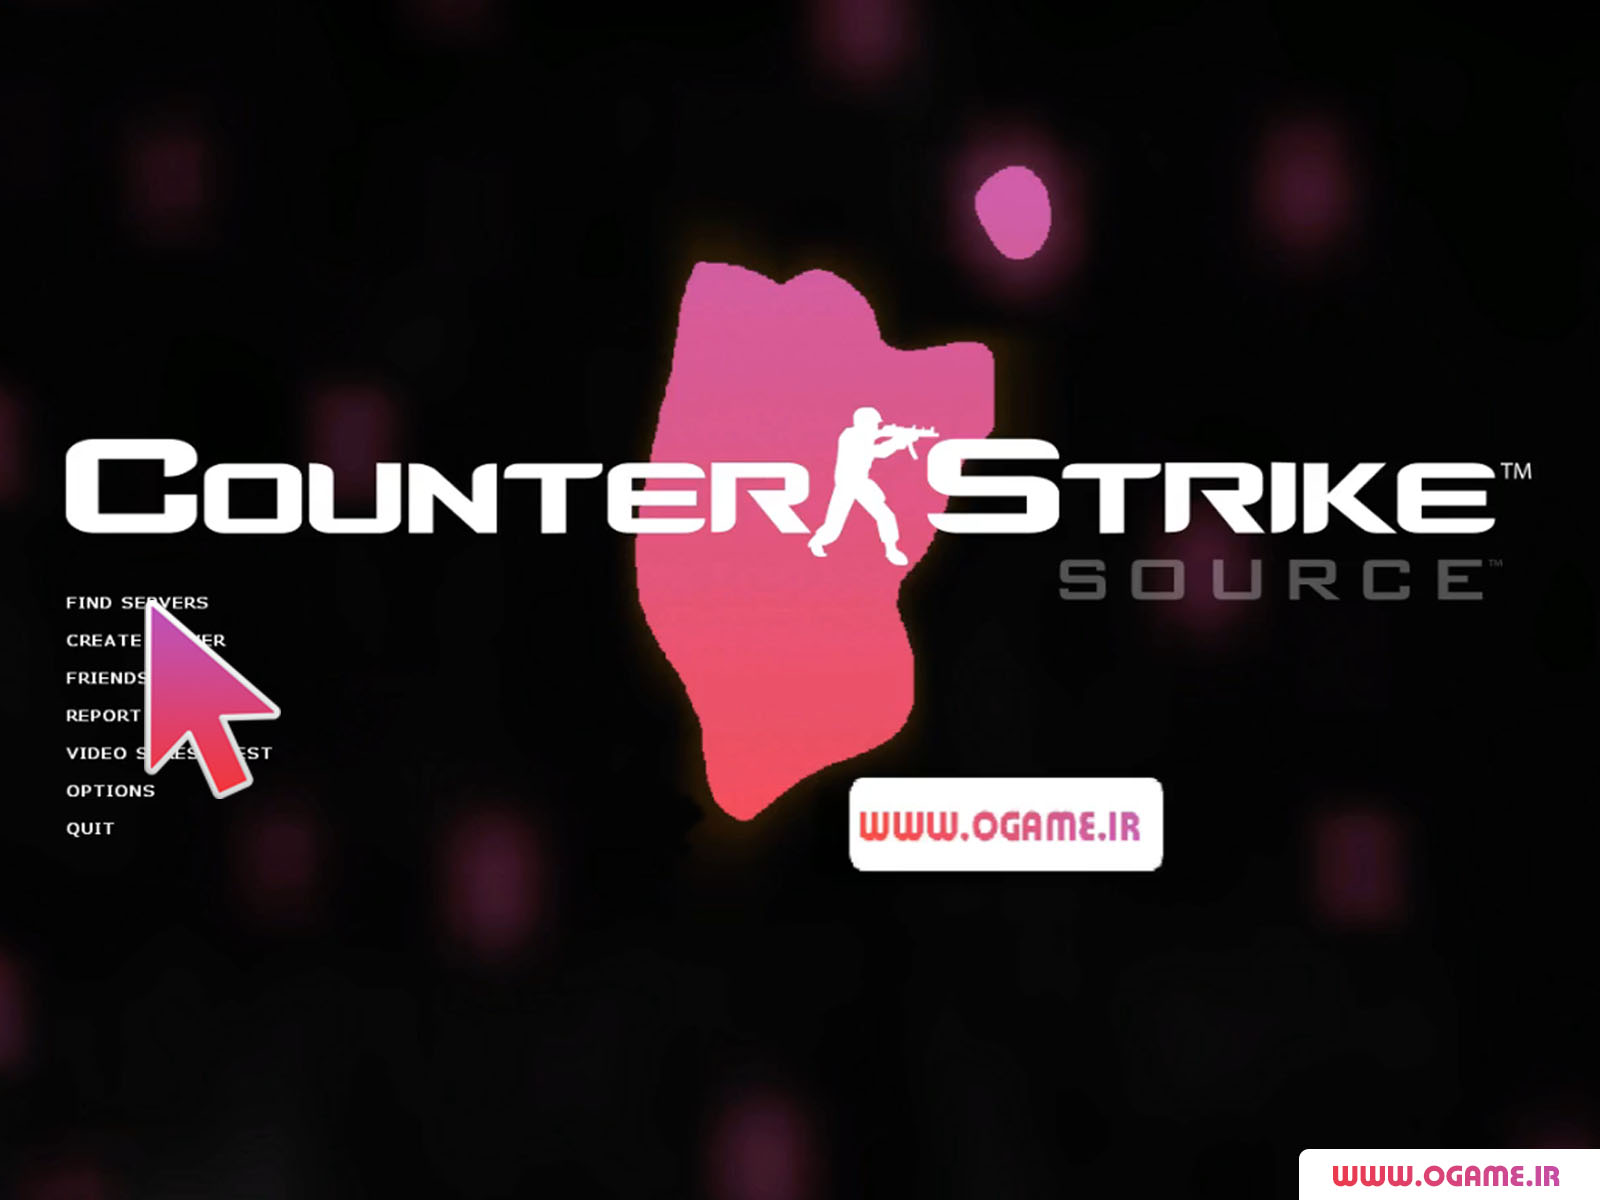  آموزش نصب بازی کانتر استرایک سورس (Counter Strike: Source) نسخه کامل